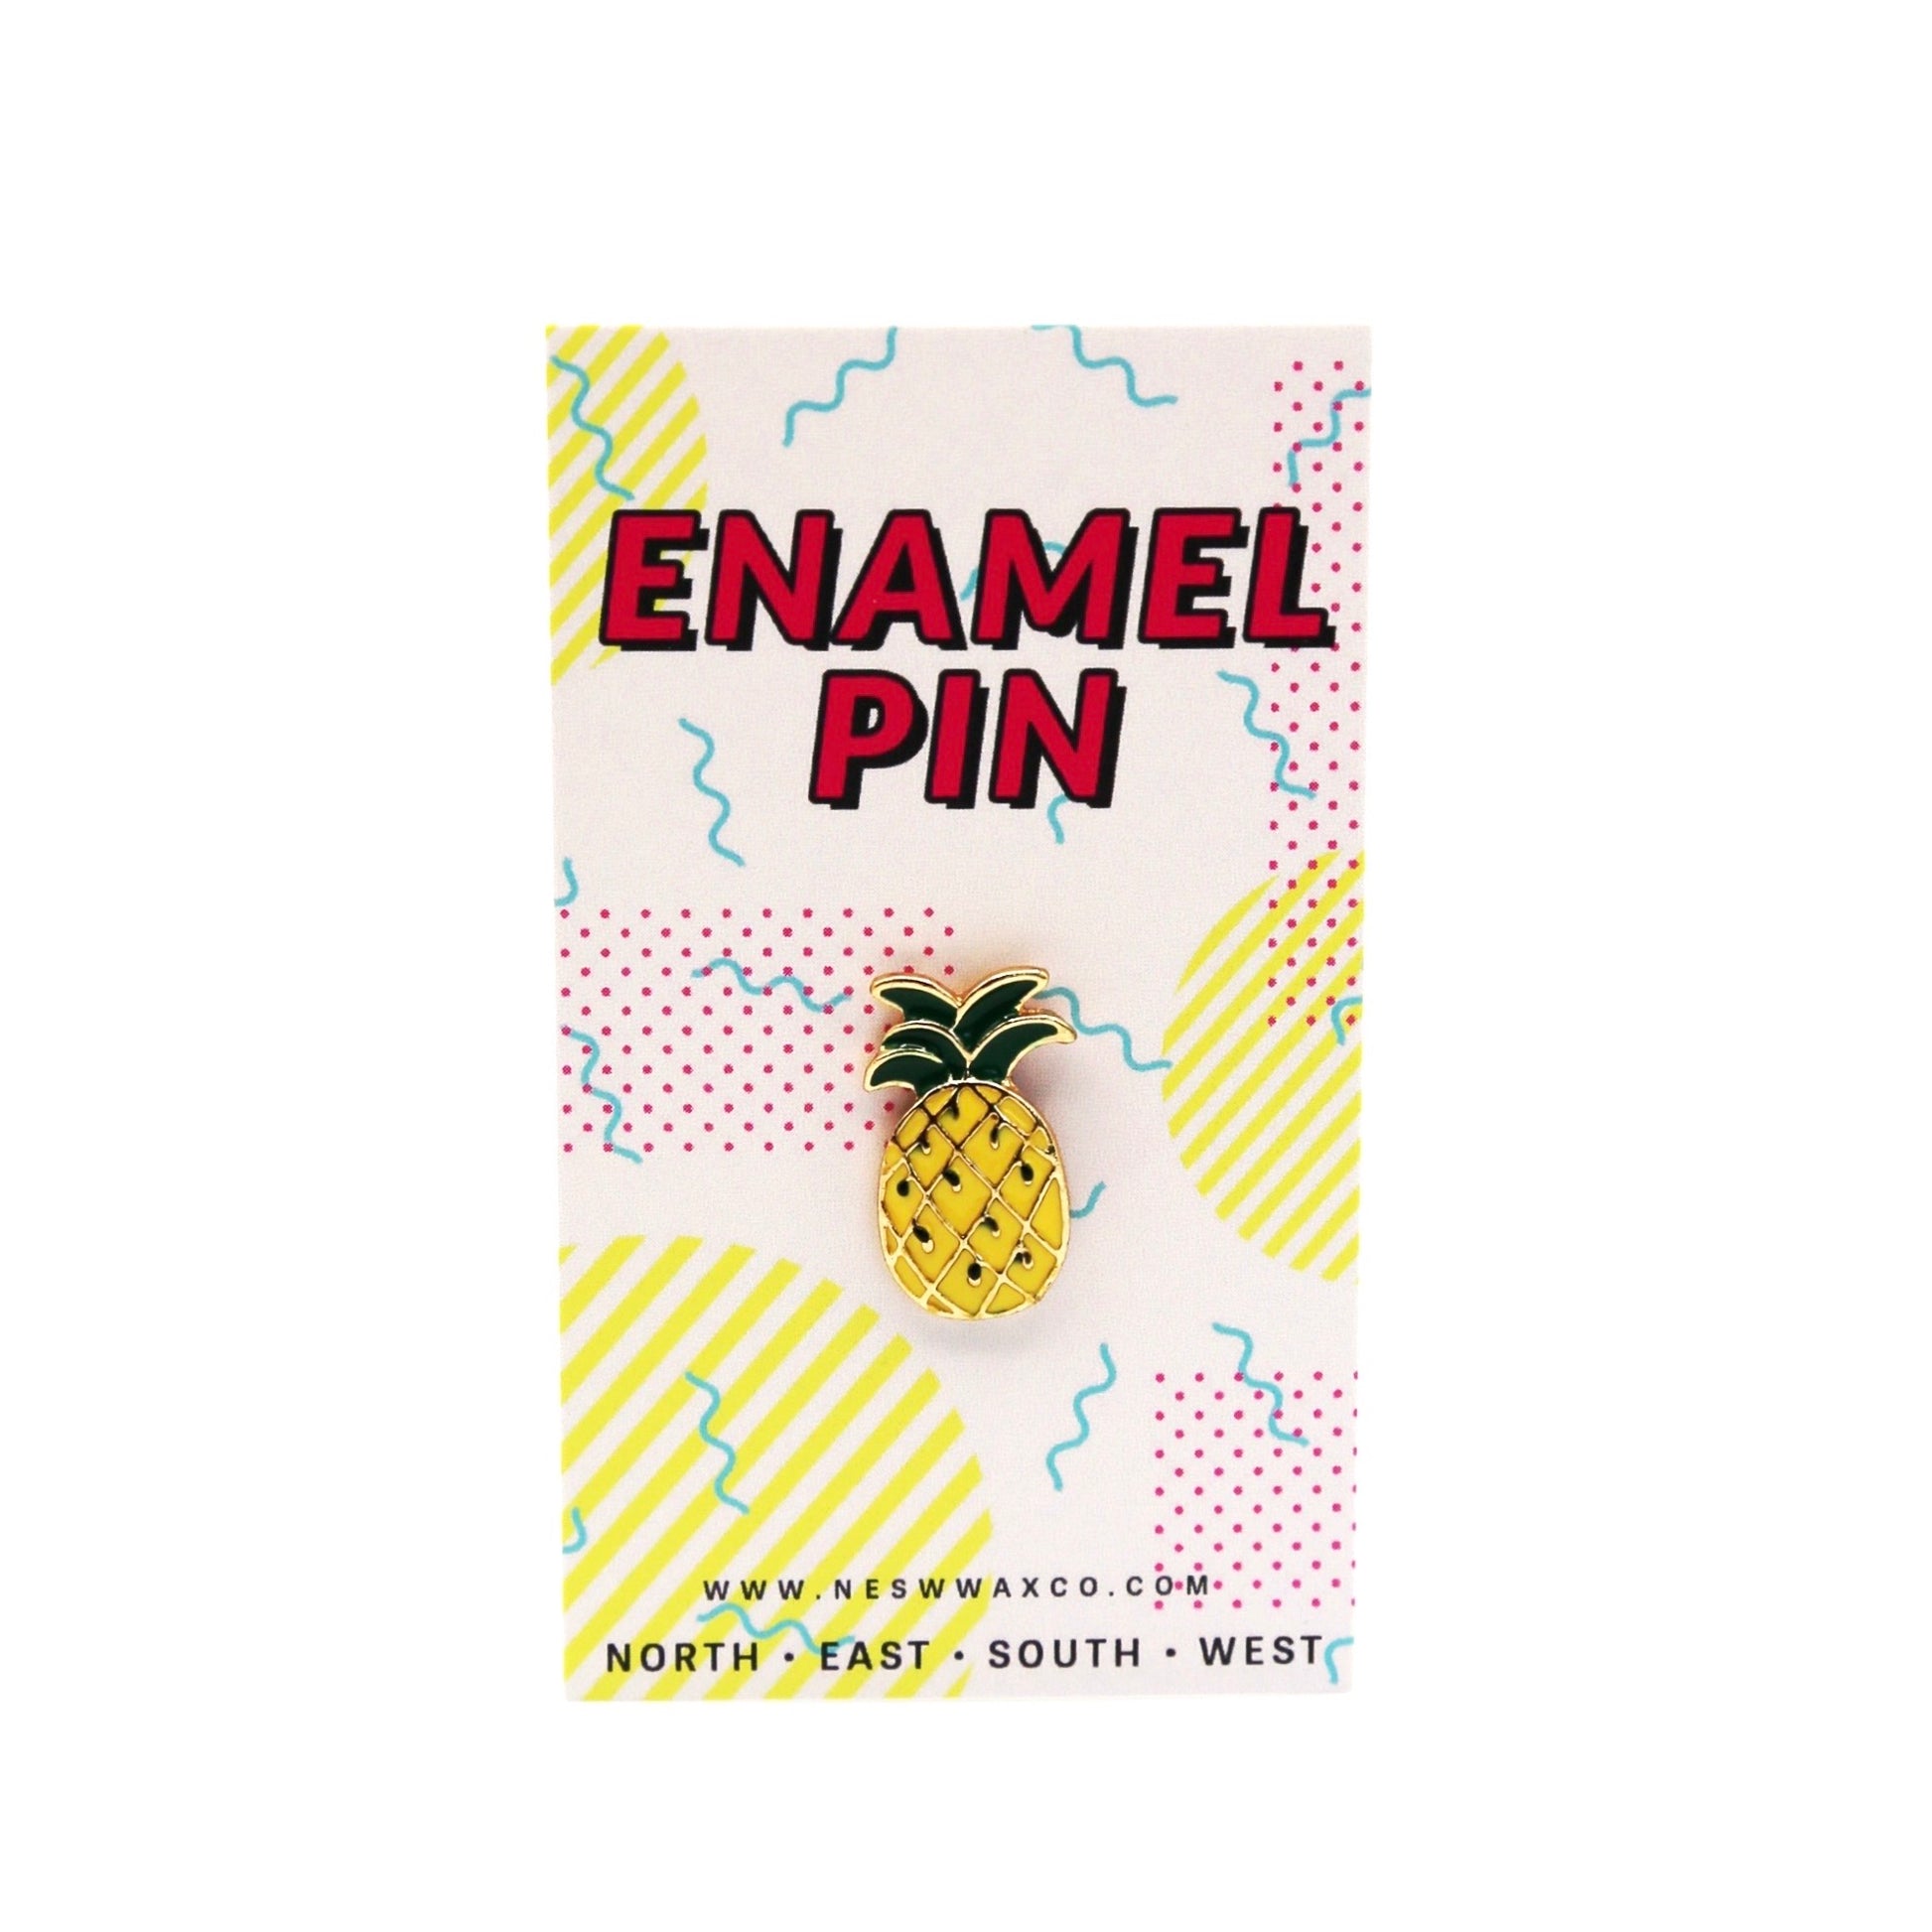 Pineapple Enamel Pin - NESW WAX CO//